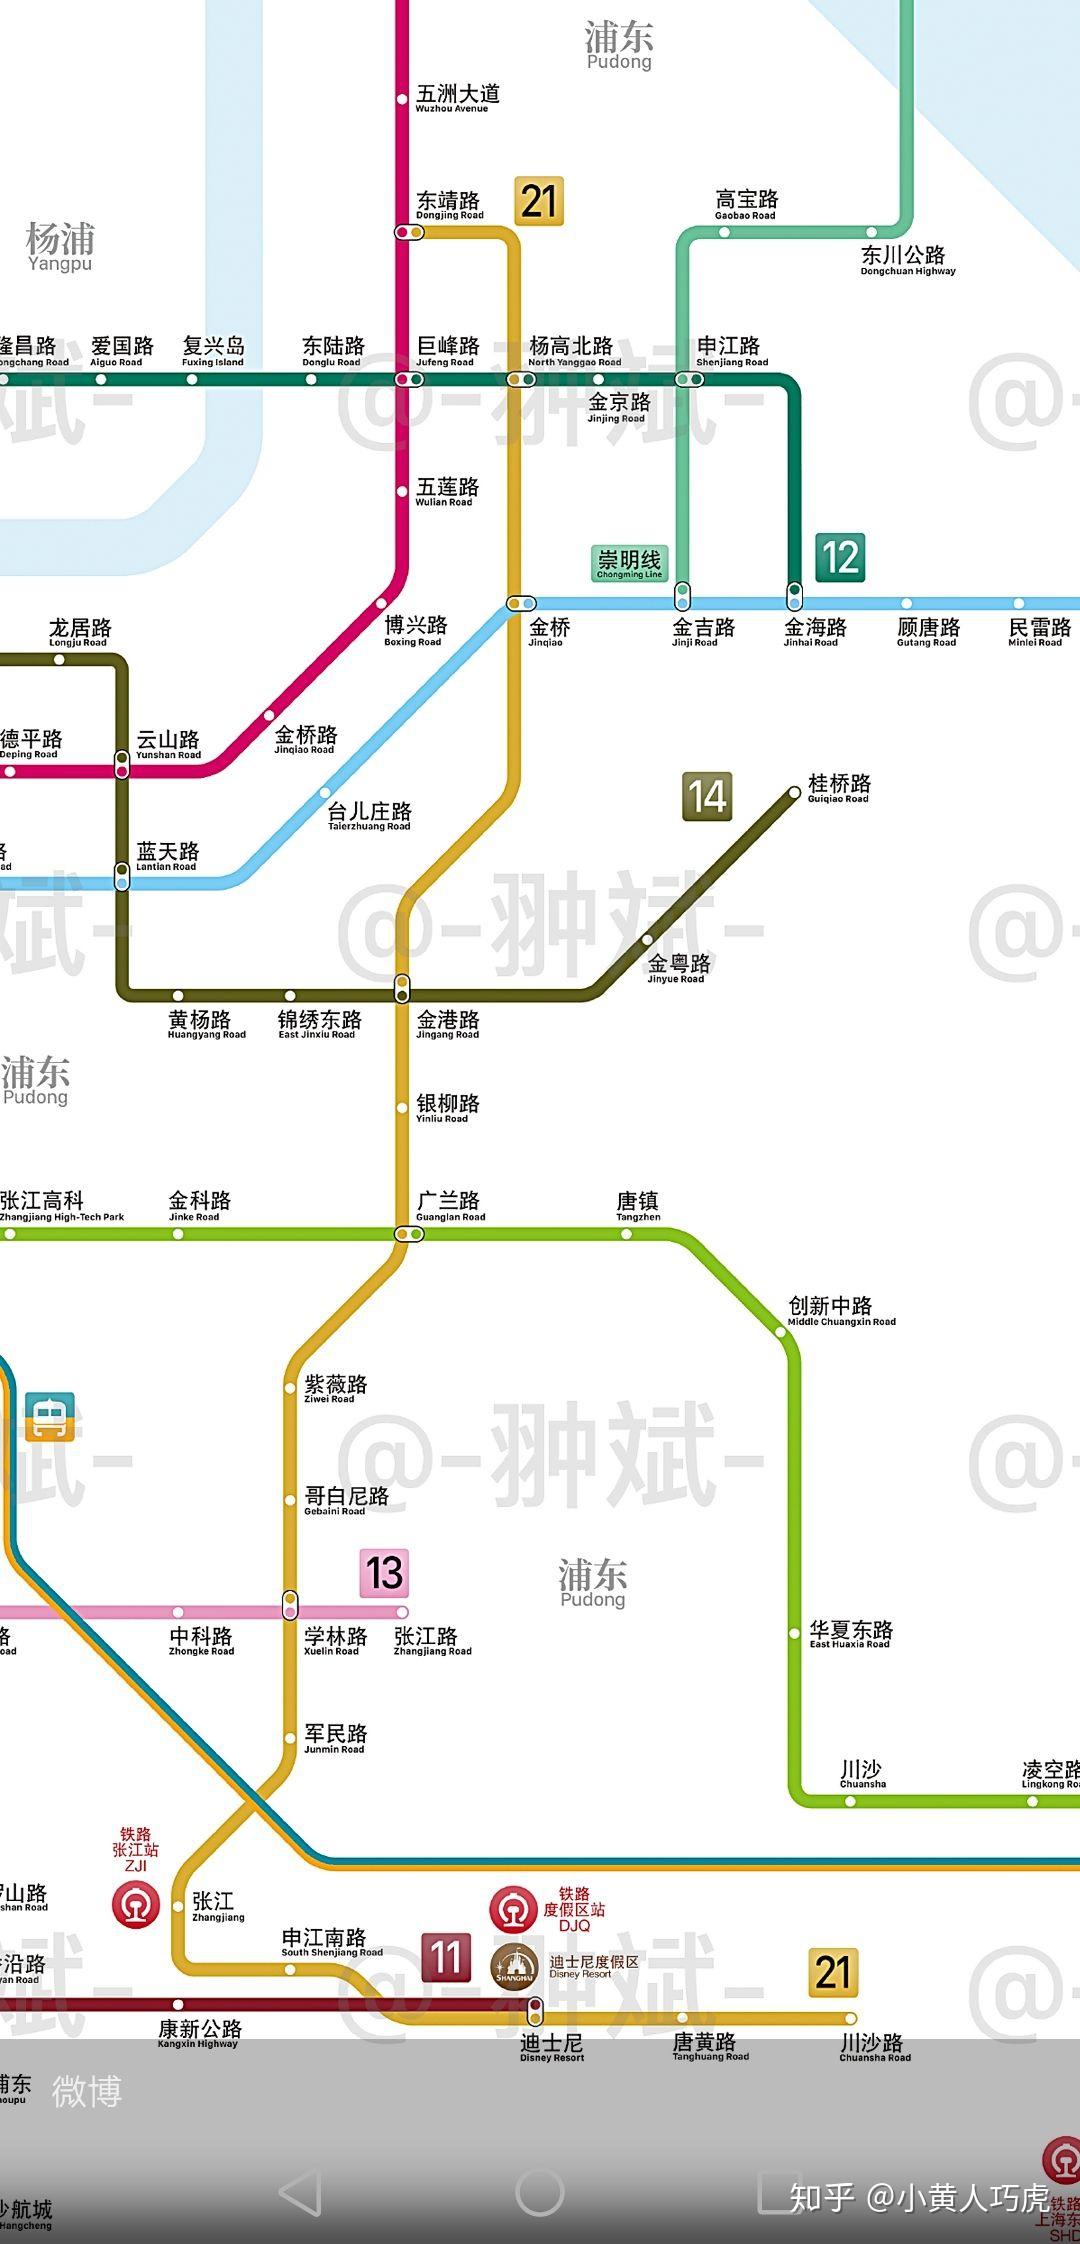 上海21号地铁线设哪些站